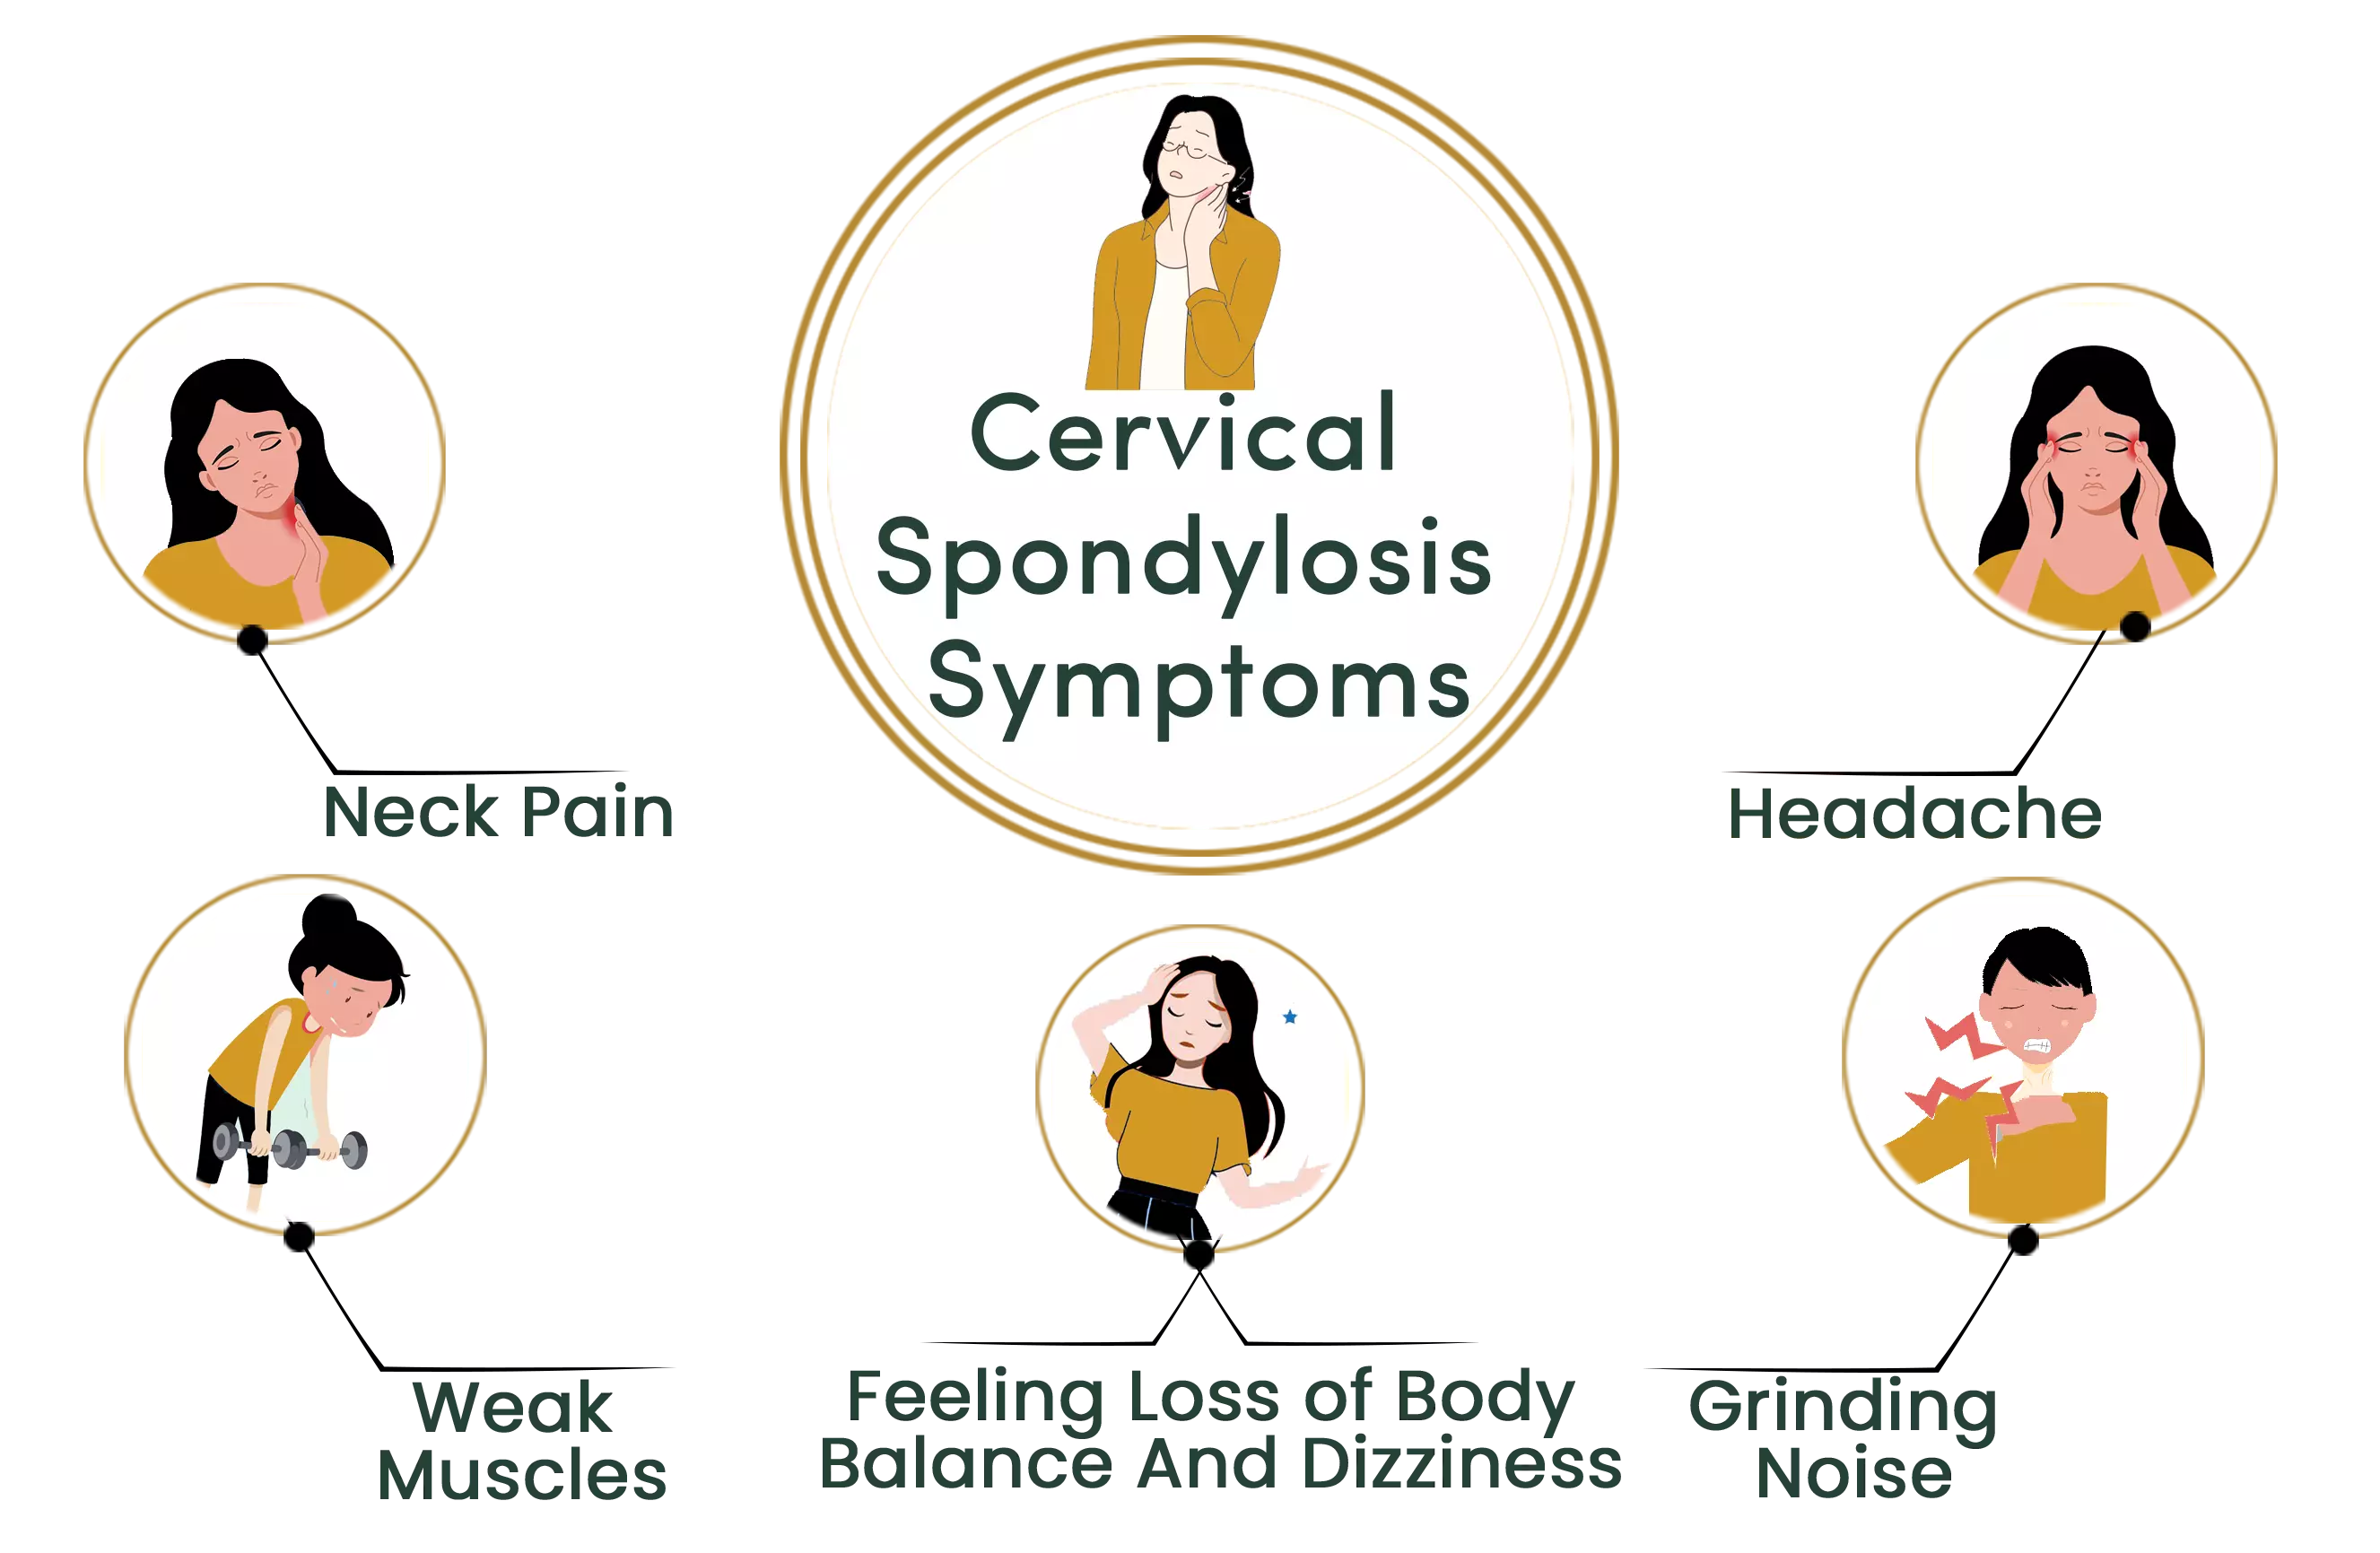 Cervical Spondylosis symptoms